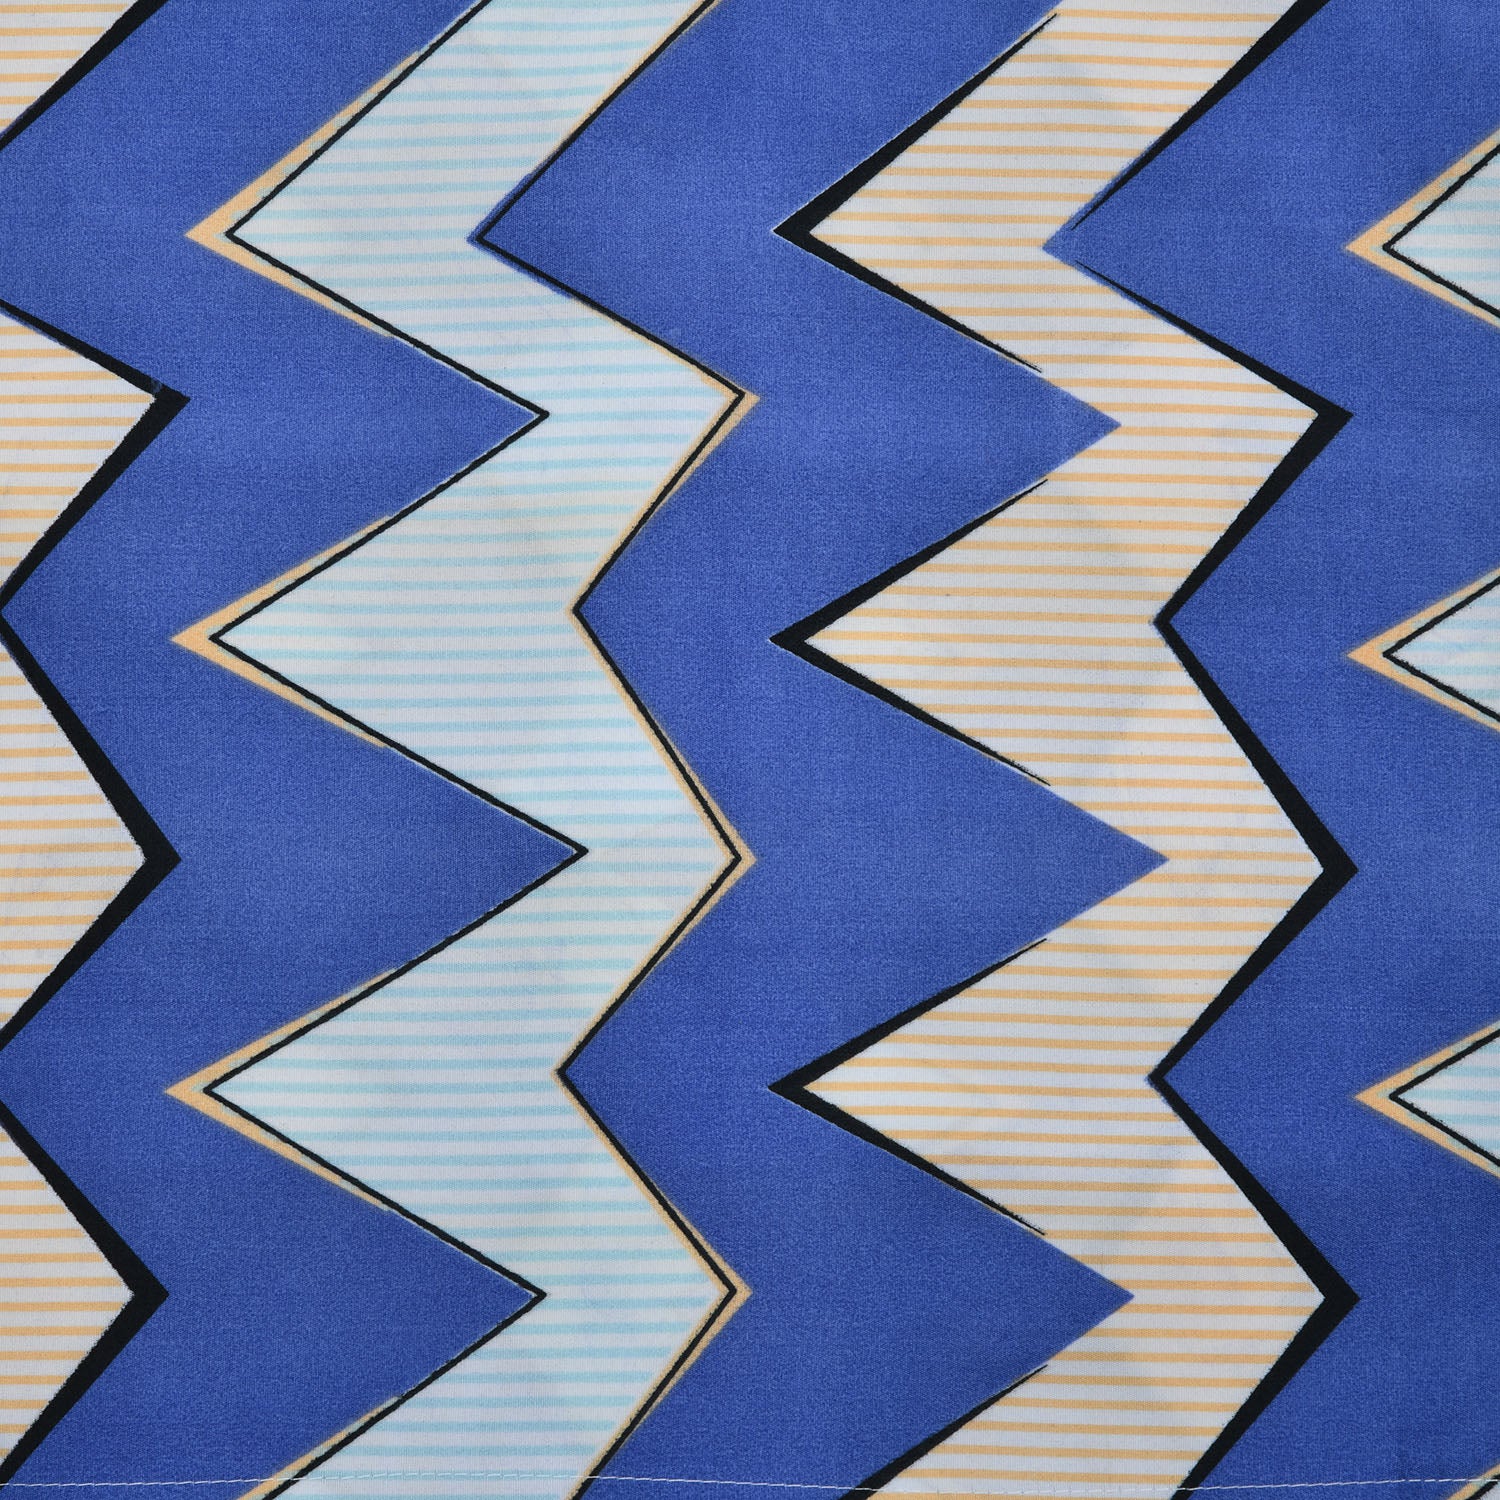 Ammara Zigzag Print 46 x 69 cm Pillow Covers Set of 2 (Multicolor)